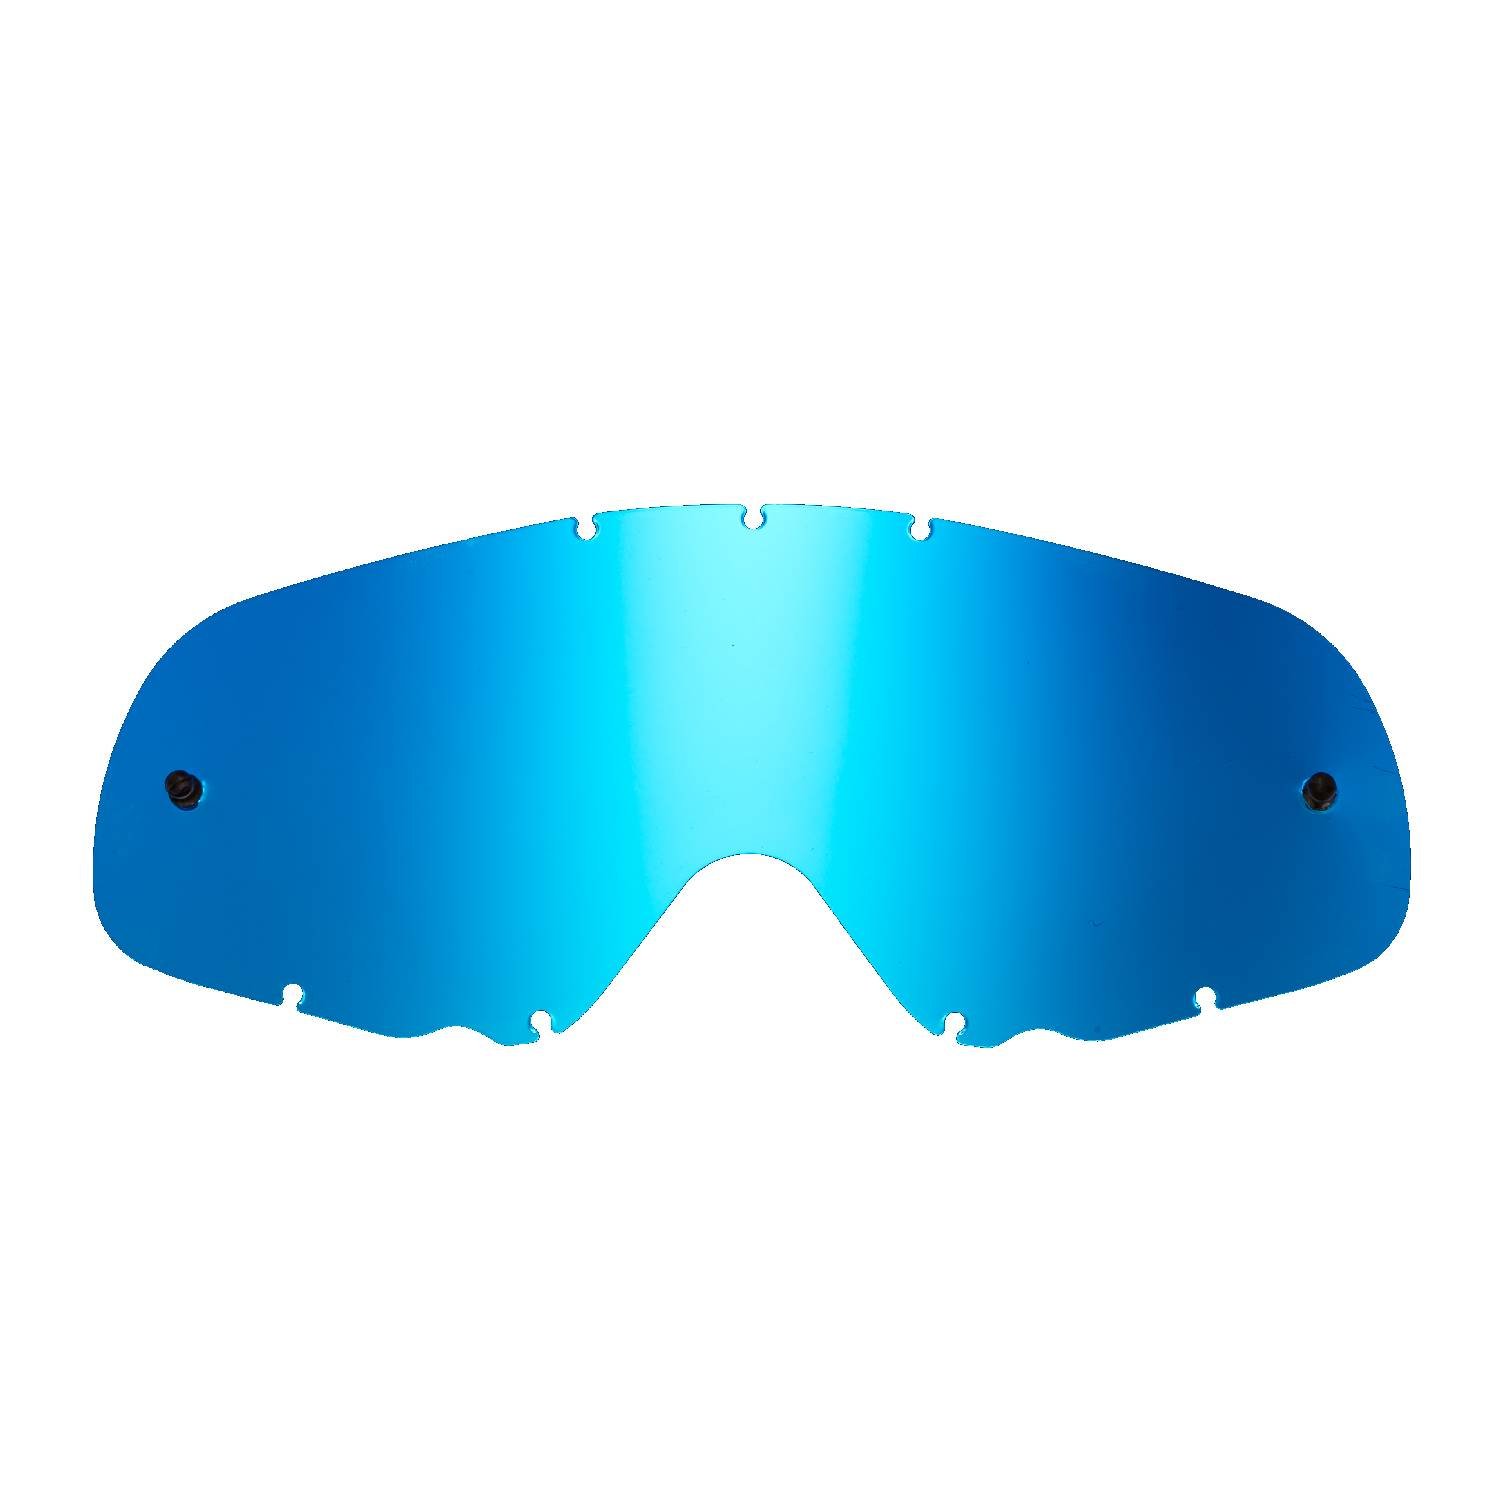 SeeCle 416164 blau getönte verspiegelte Ersatzgläser für Brillen kompatibel mit Oakley Crowbar Maske von SeeCle